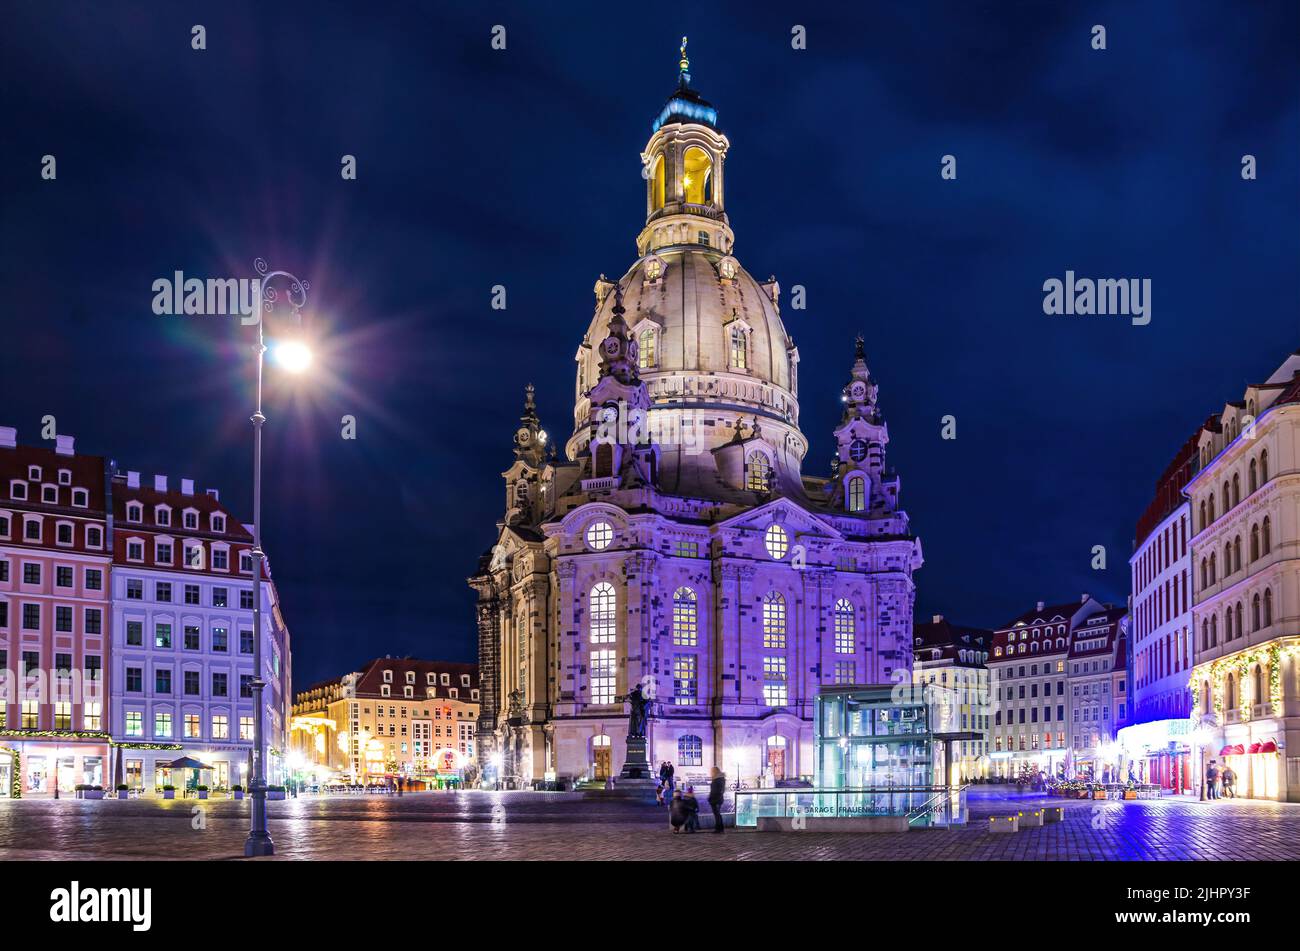 Dresden, Sajonia, Alemania: La famosa iglesia Frauenkirche en la plaza Neumarkt. Foto de stock